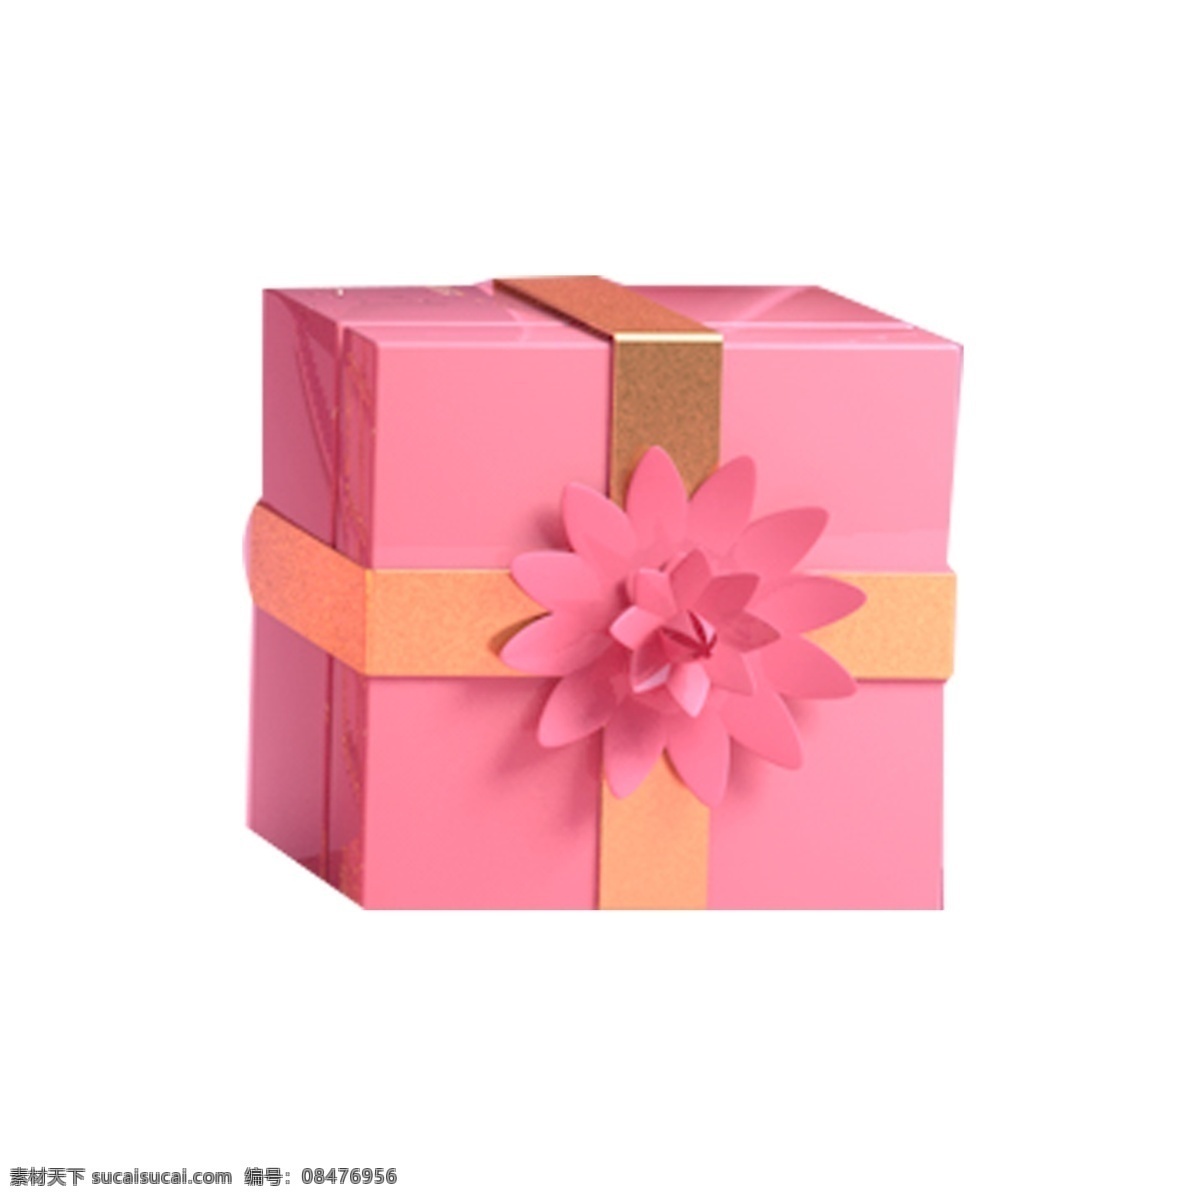 红色 包装 礼盒 免 抠 图 红色花朵 节日礼盒 生日礼物 红色包装盒子 蝴蝶节 礼物 盒子 礼品 免抠图